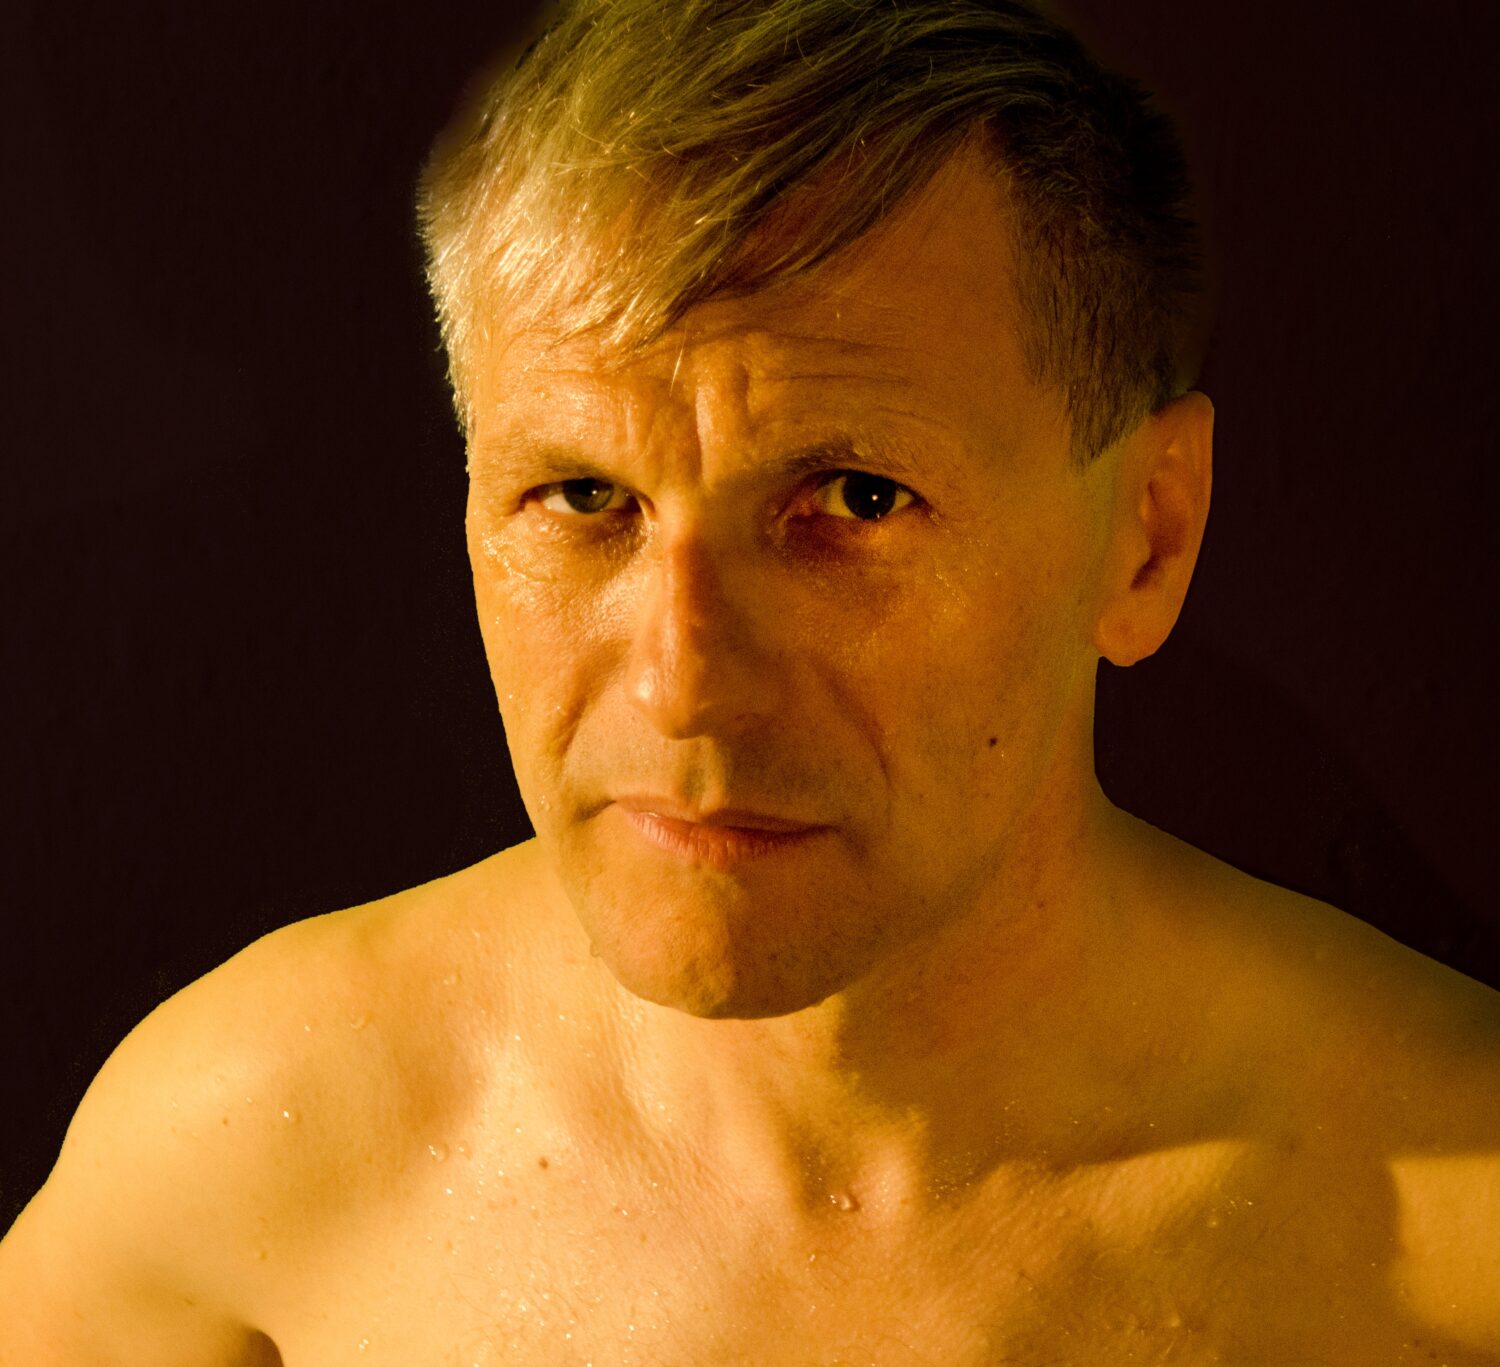 Ein muskulöser Mann ohne Hemd steht vor einer schwarzen Wand mit einem entspannten Gesichtsausdruck.